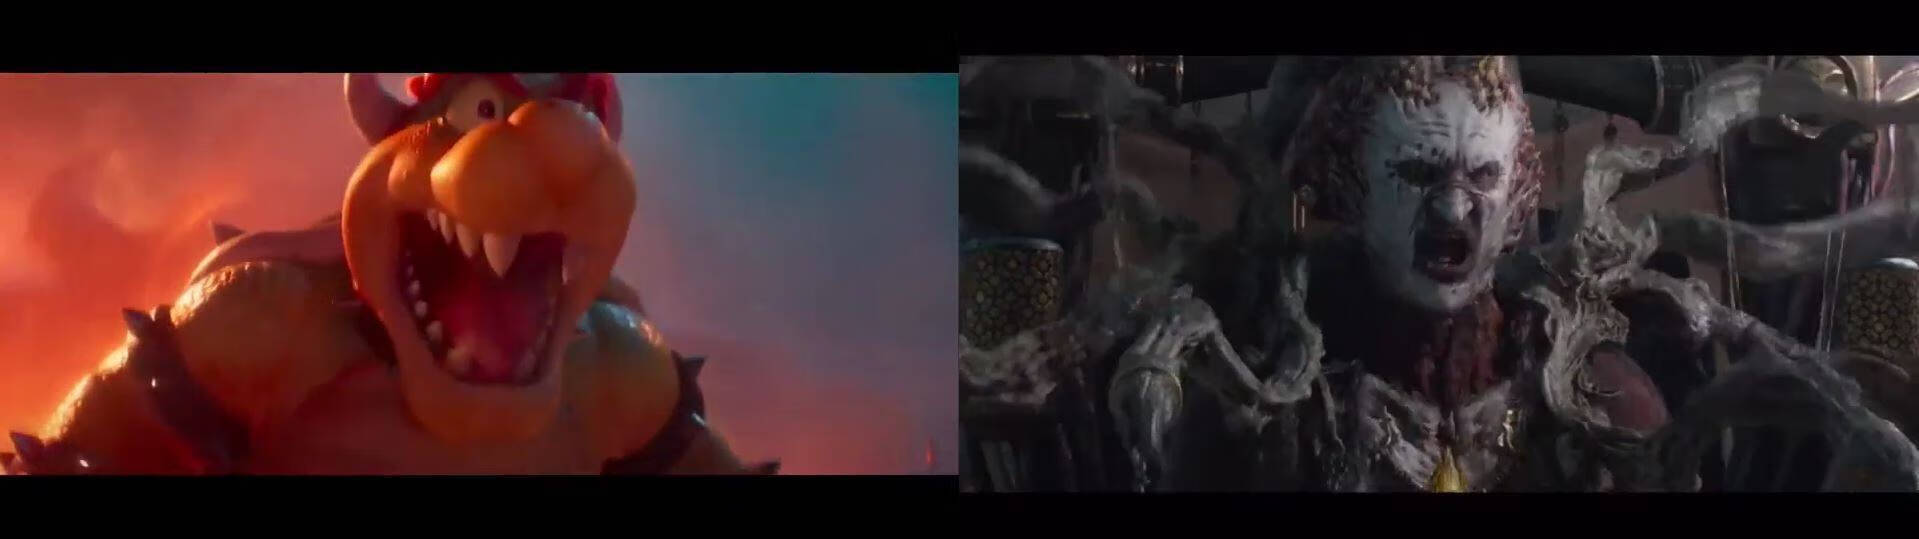 《超级马里奥》的电影宣传片被指借鉴了暗黑2的第五幕动画